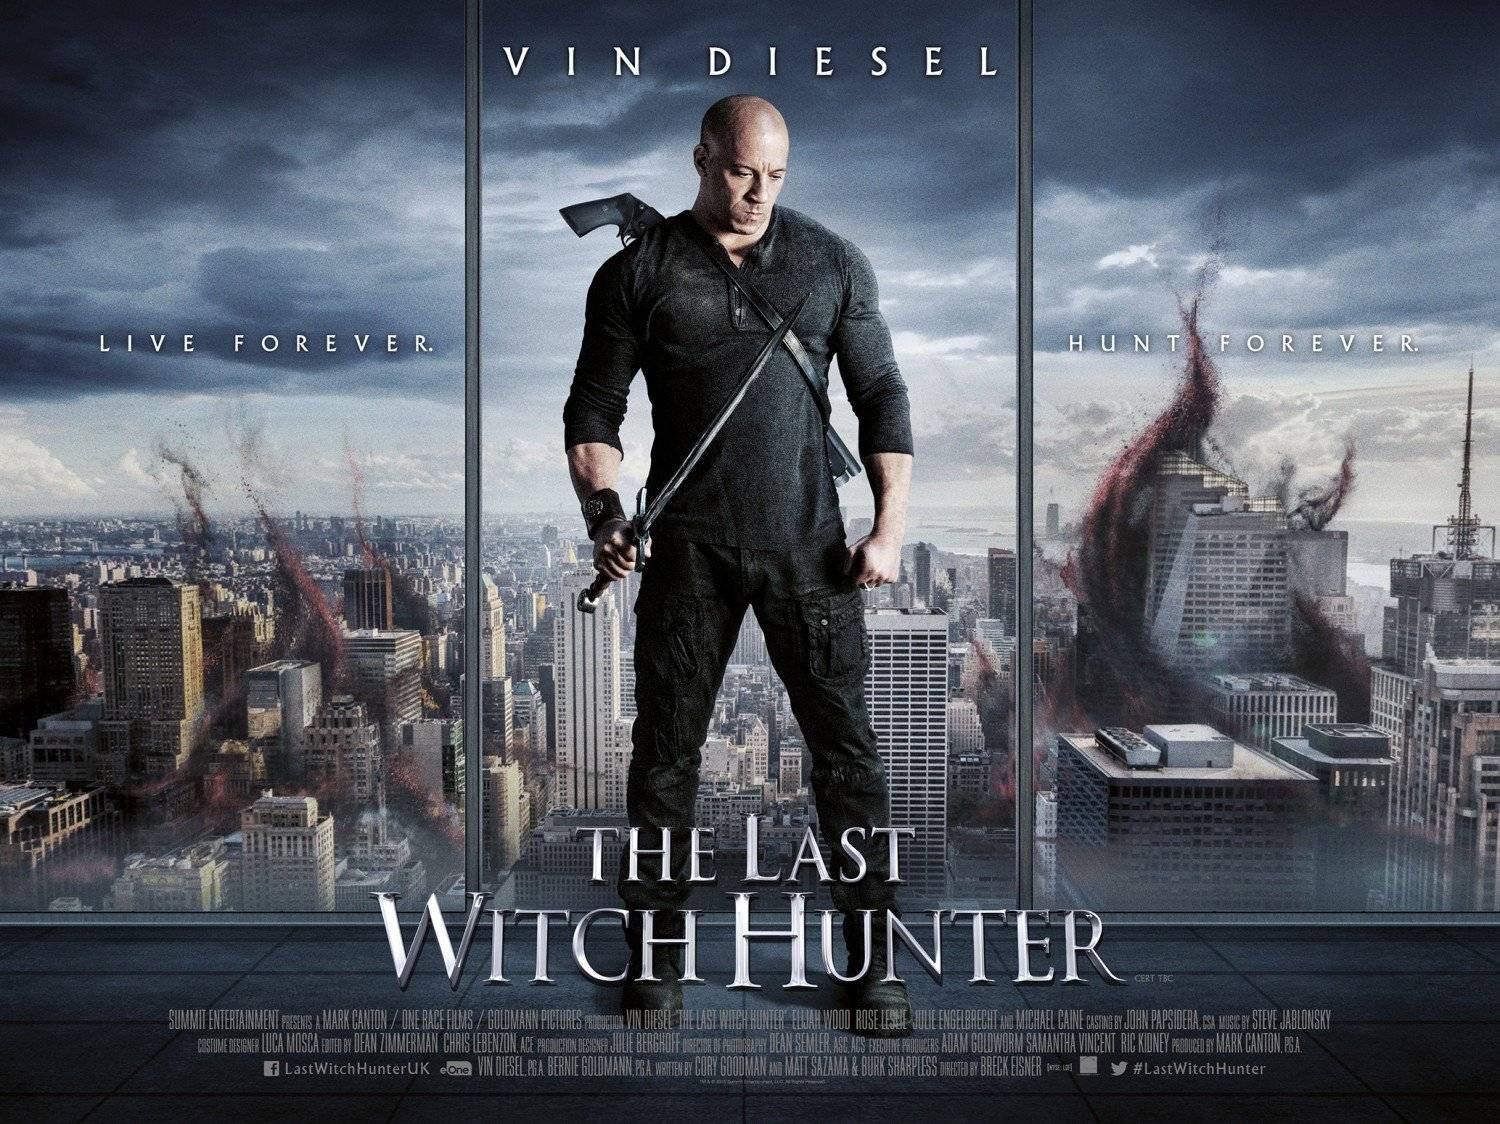 The Last Witch Hunter / The Last Witch Hunter (2015)